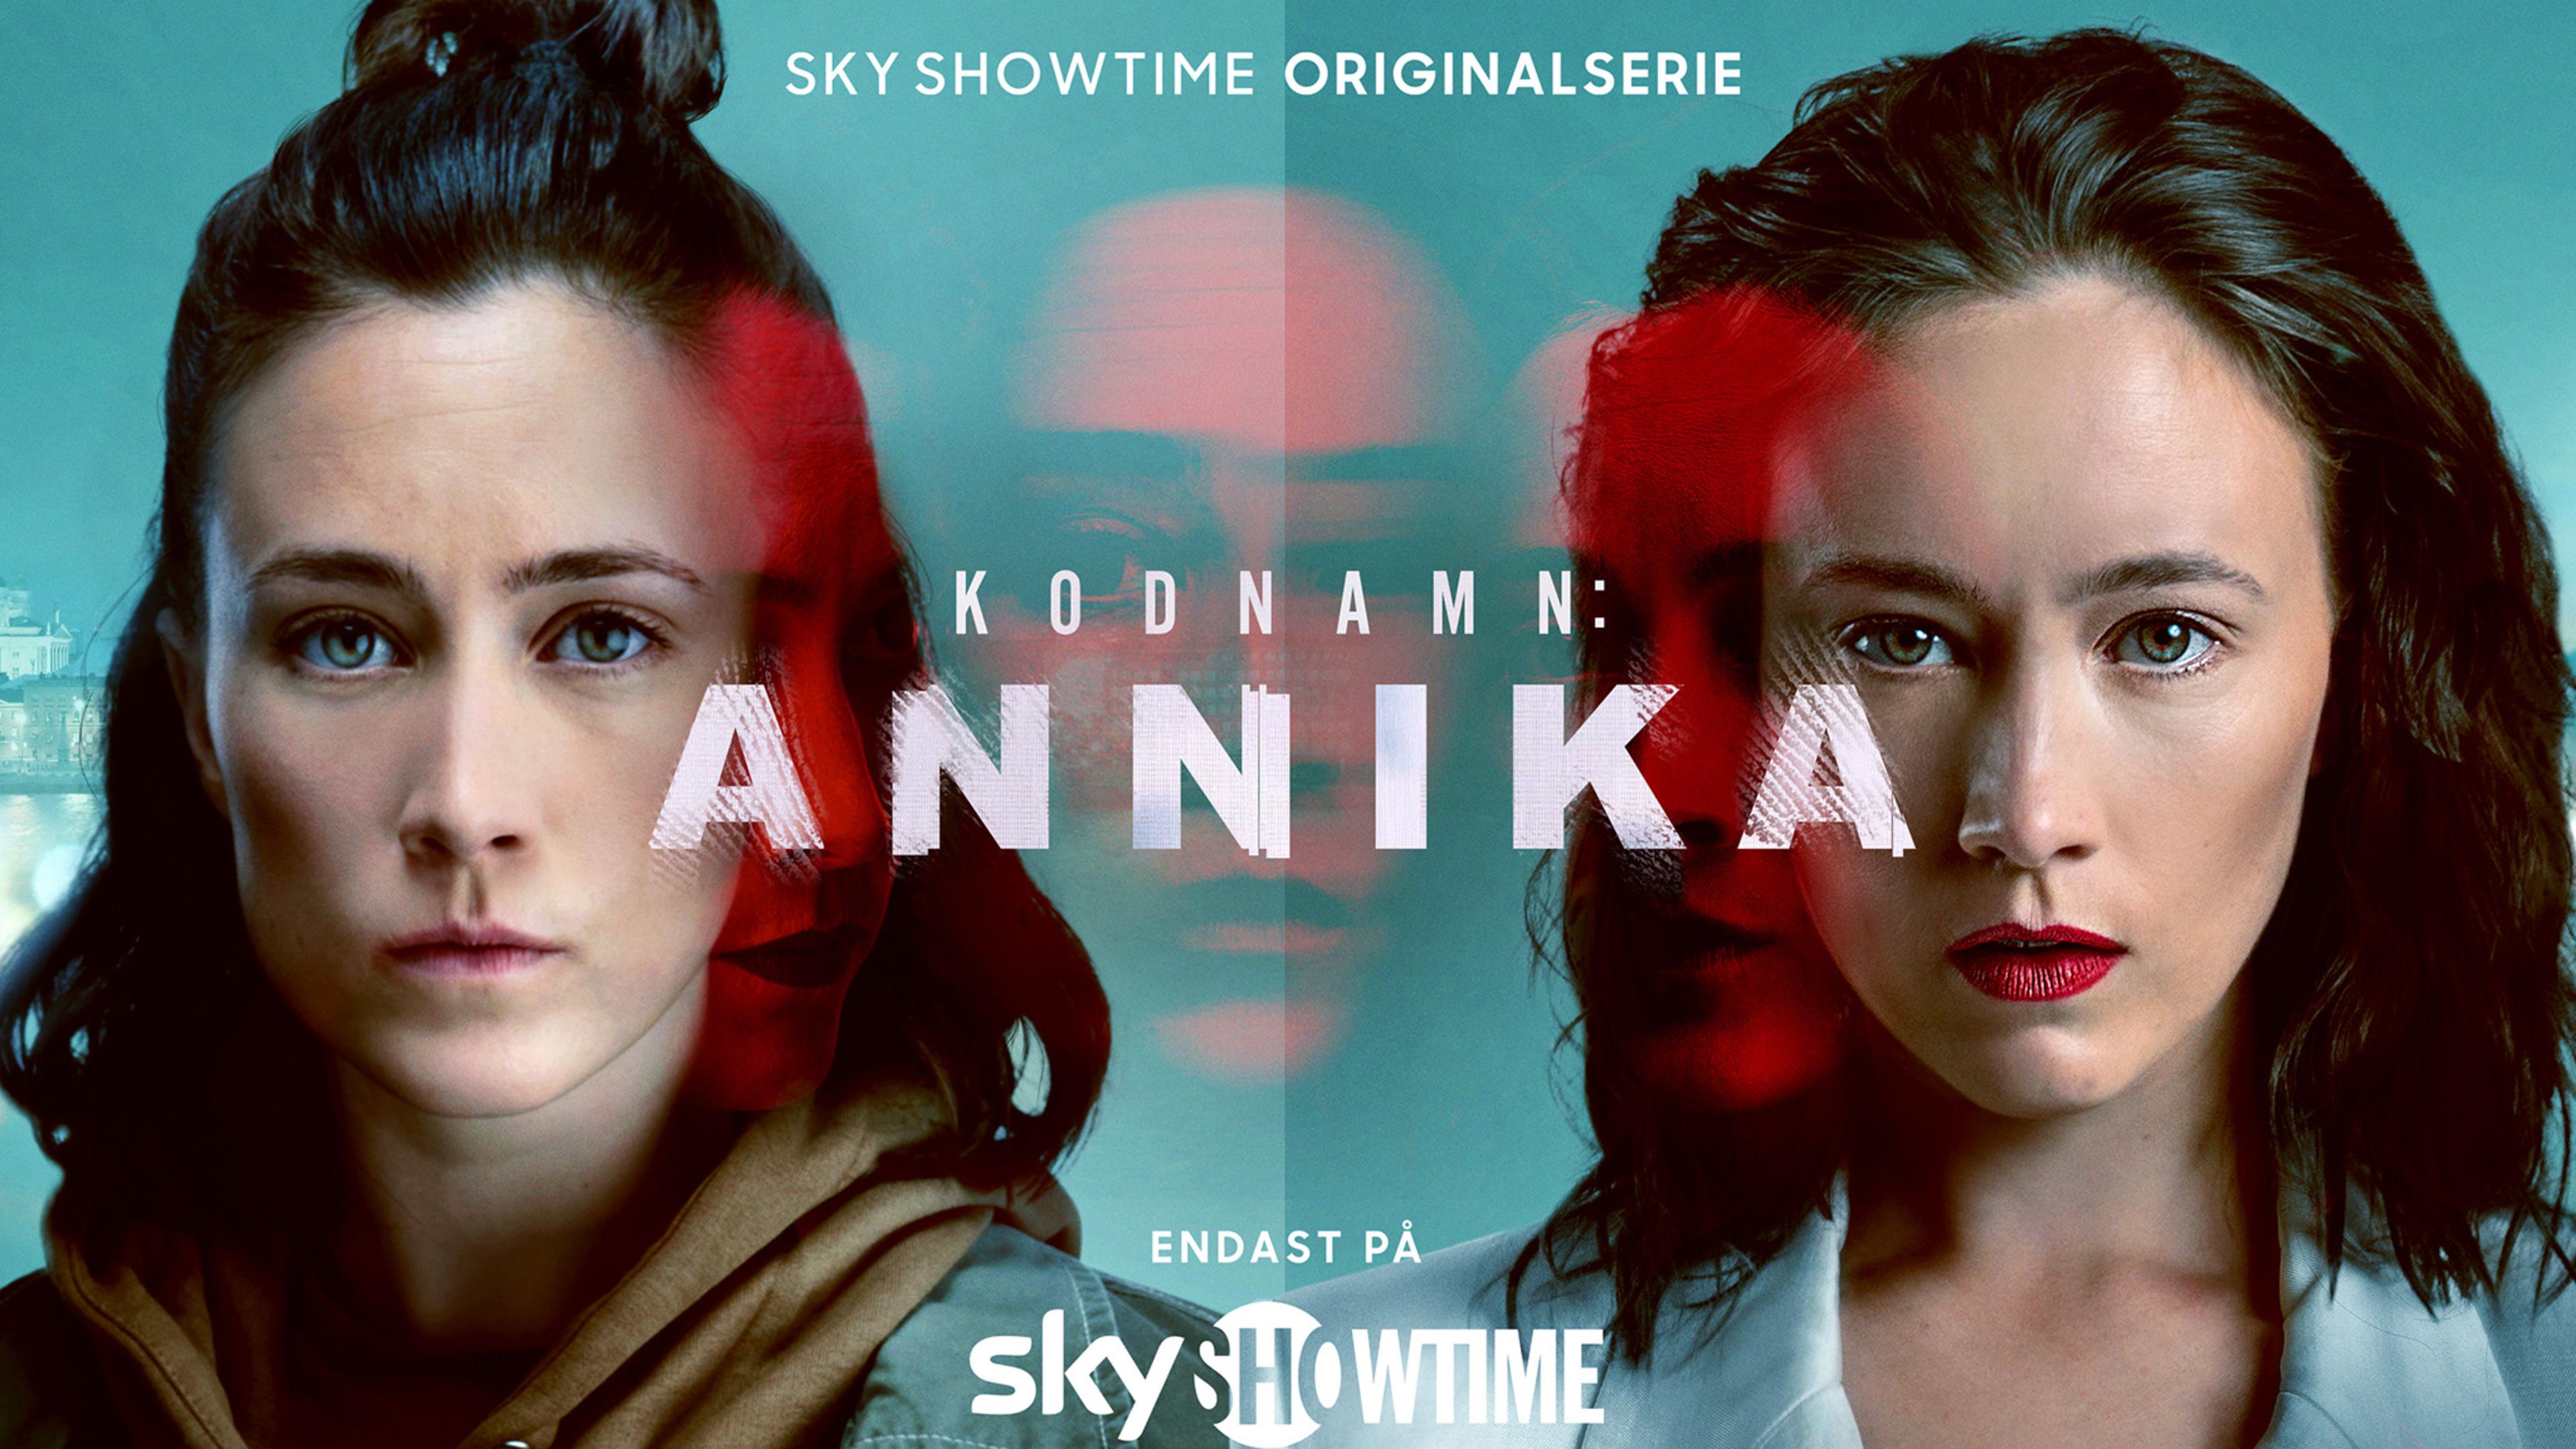 Missa inte den spännande serien Kodnamn: Annika på SkyShowtime.